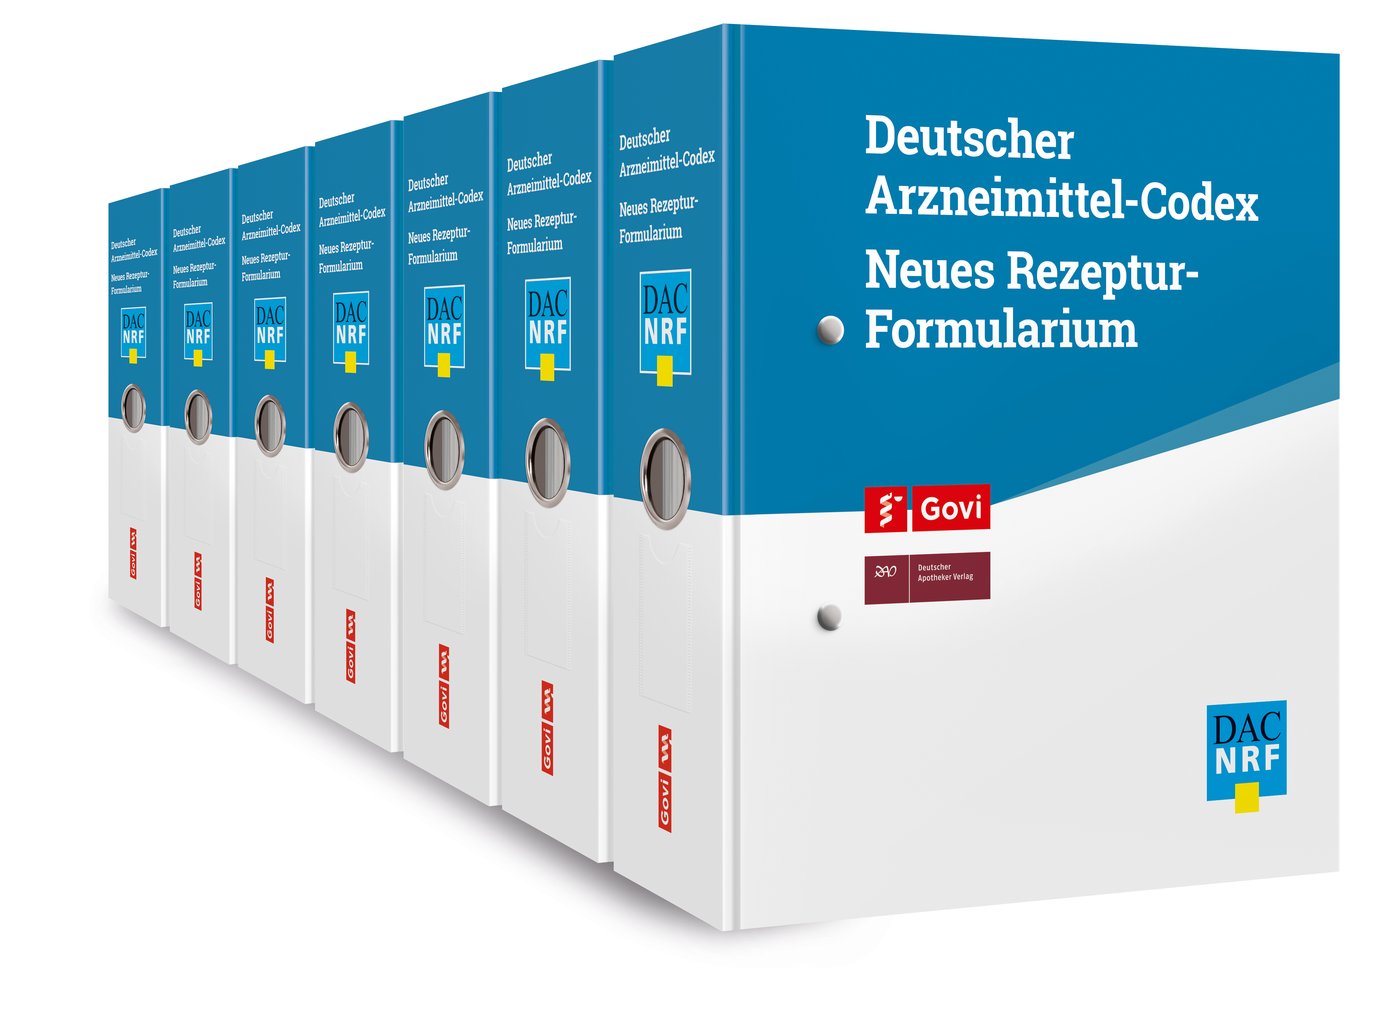 Deutscher Arzneimittel-Codex® / Neues Rezeptur-Formularium® (DAC/NRF)